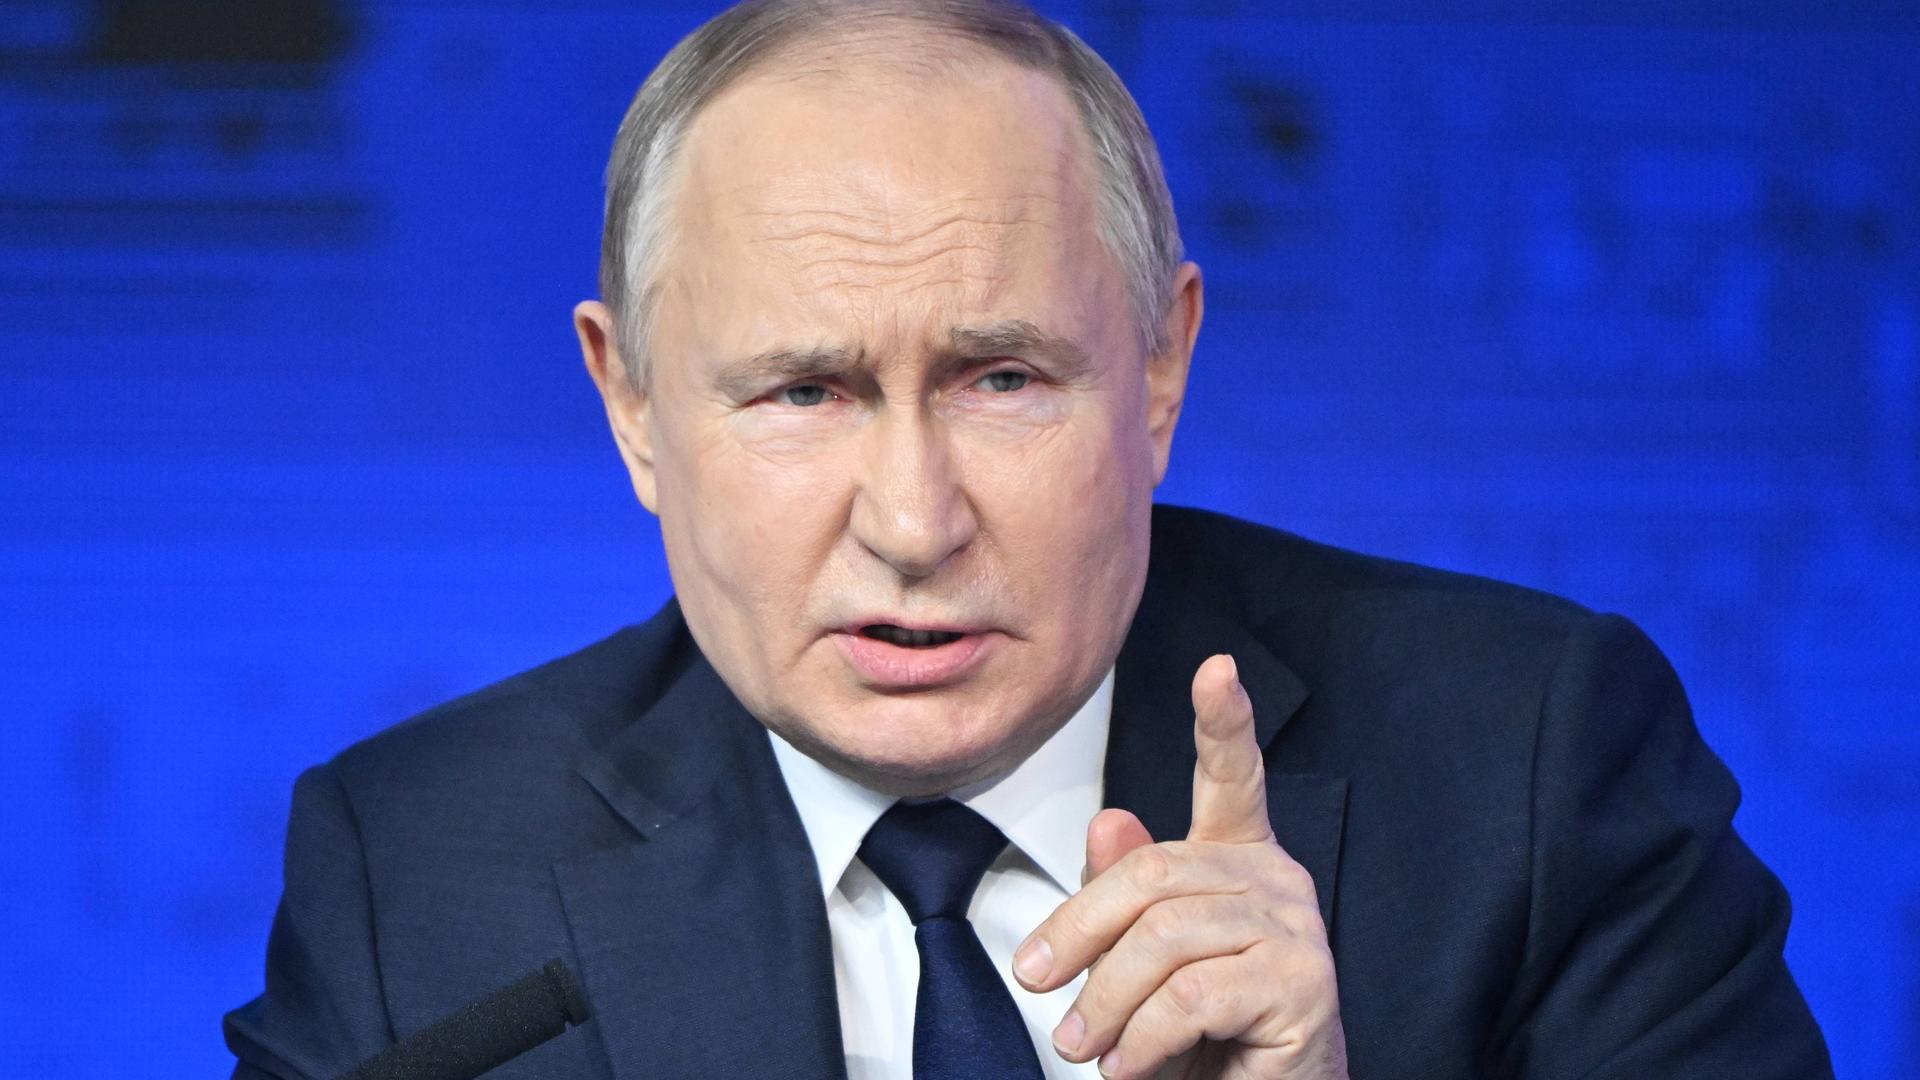 Der russische Präsident Putin spricht und gestikuliert mit der linken Hand.